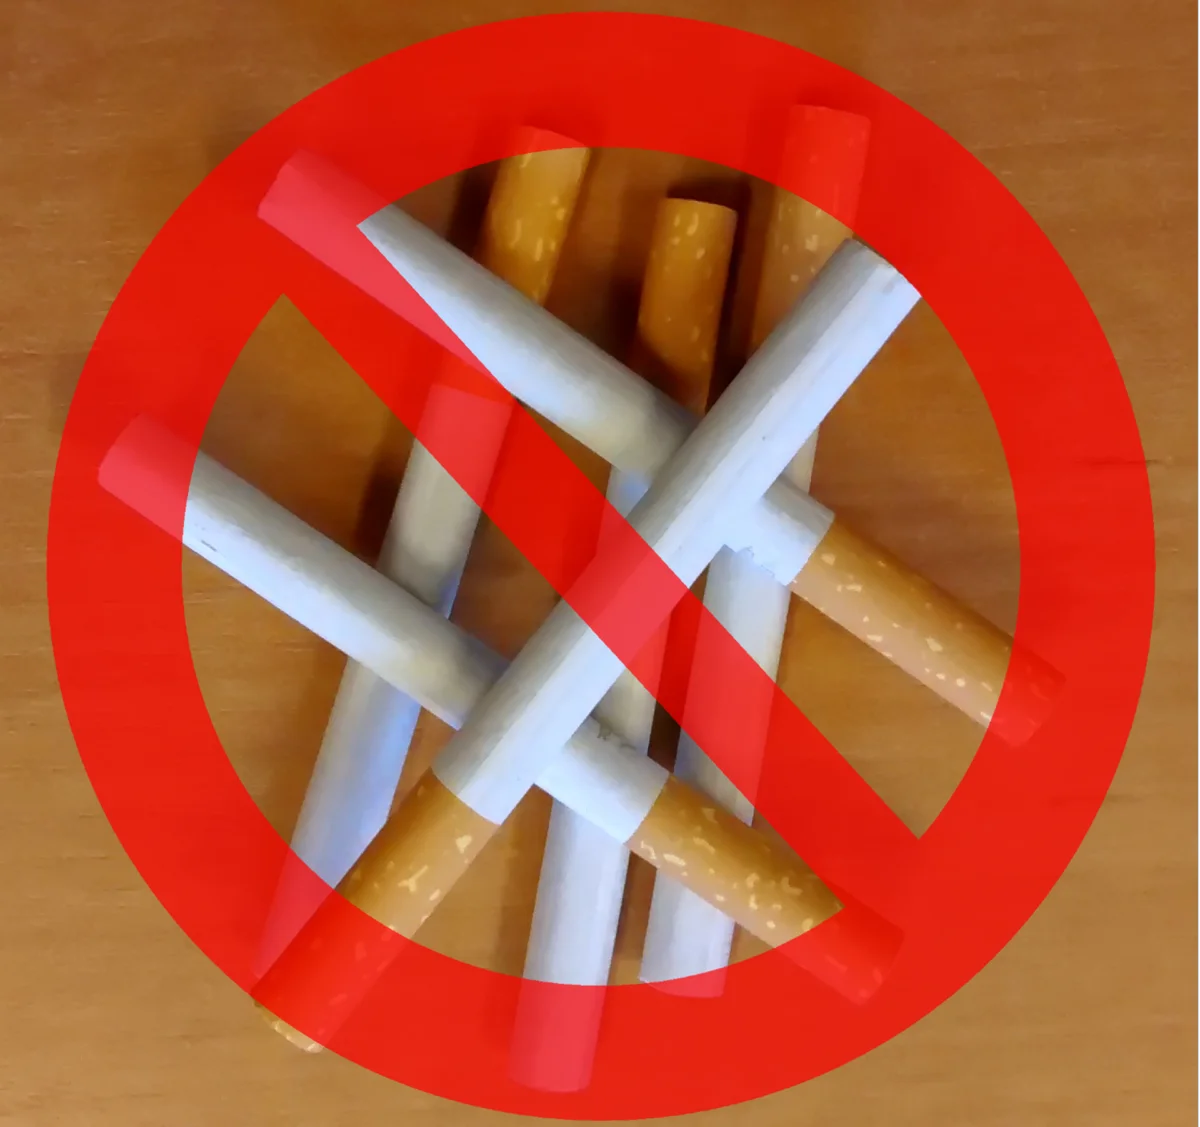 Țigările care vor fi interzise. Noi restricții pentru fumători